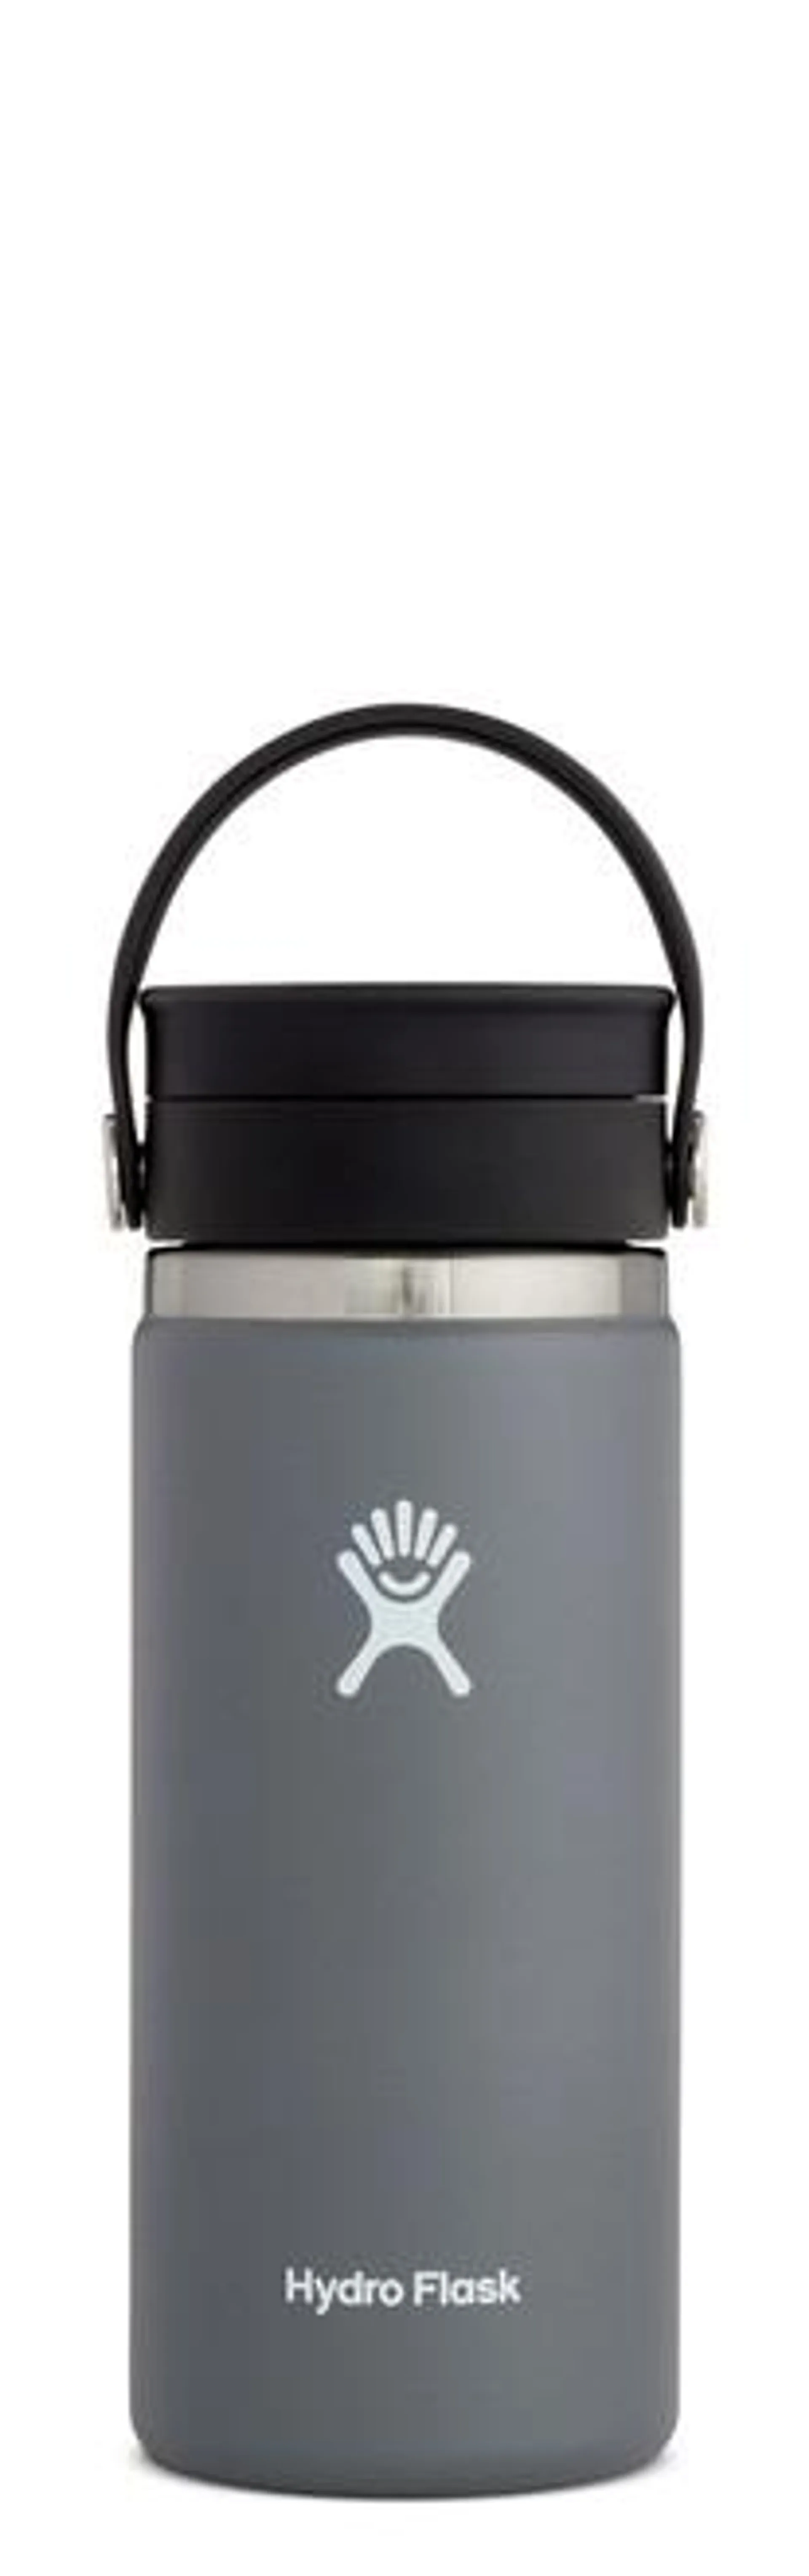 Hydro Flask 16 oz Coffee With Flex Sip Lid